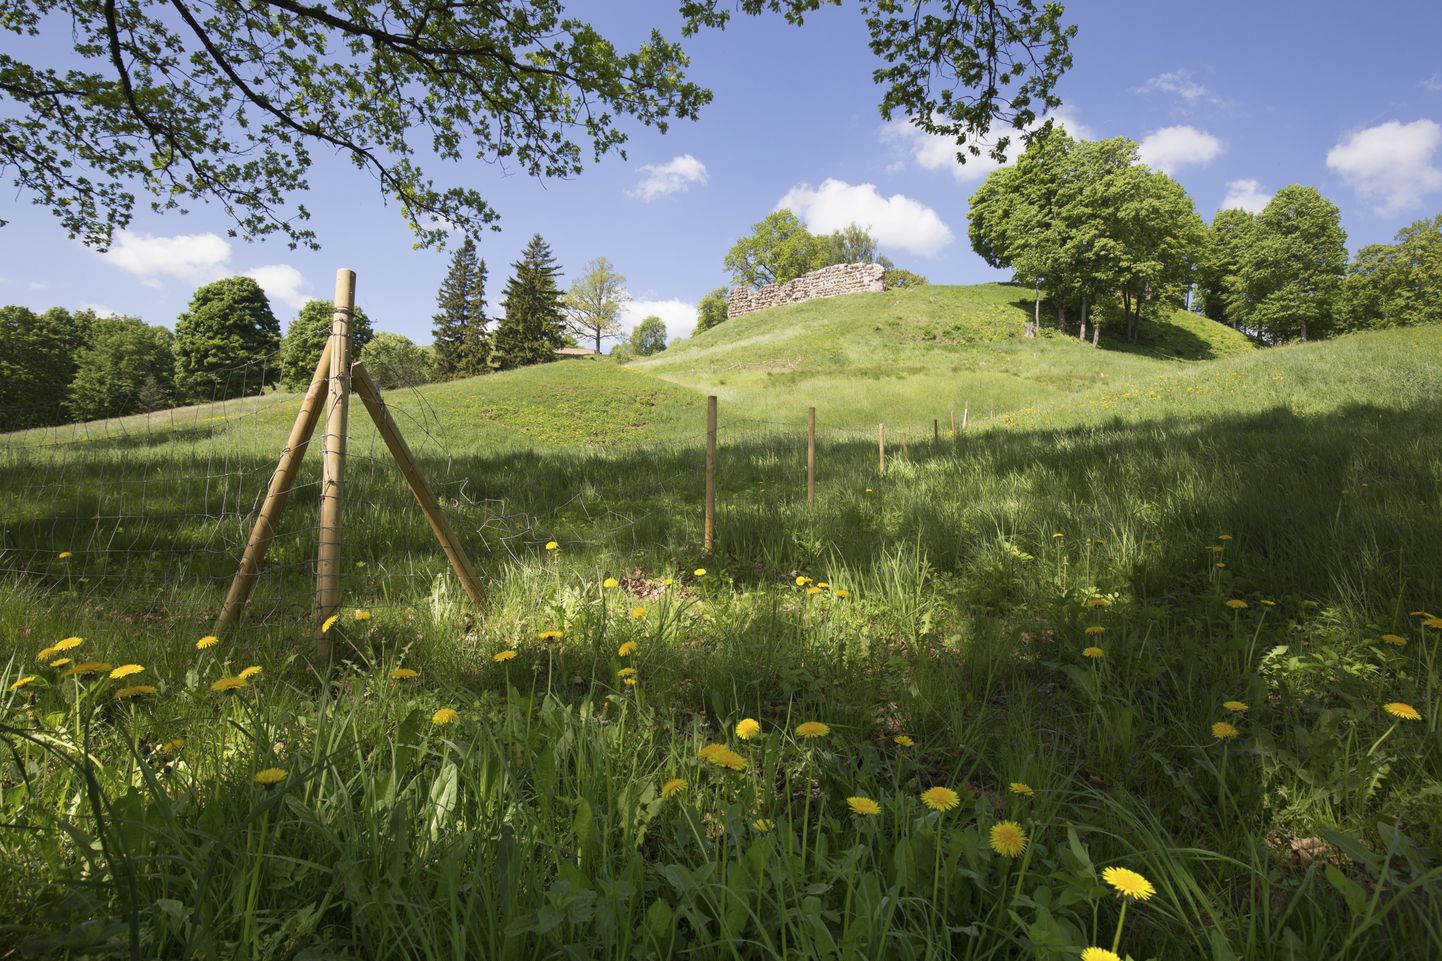 Viljandi lossimägede nõlvale rajatakse nädala lõpuks 200 meetrit uut võrkaeda, et lambad suvel aedikus püsiksid.